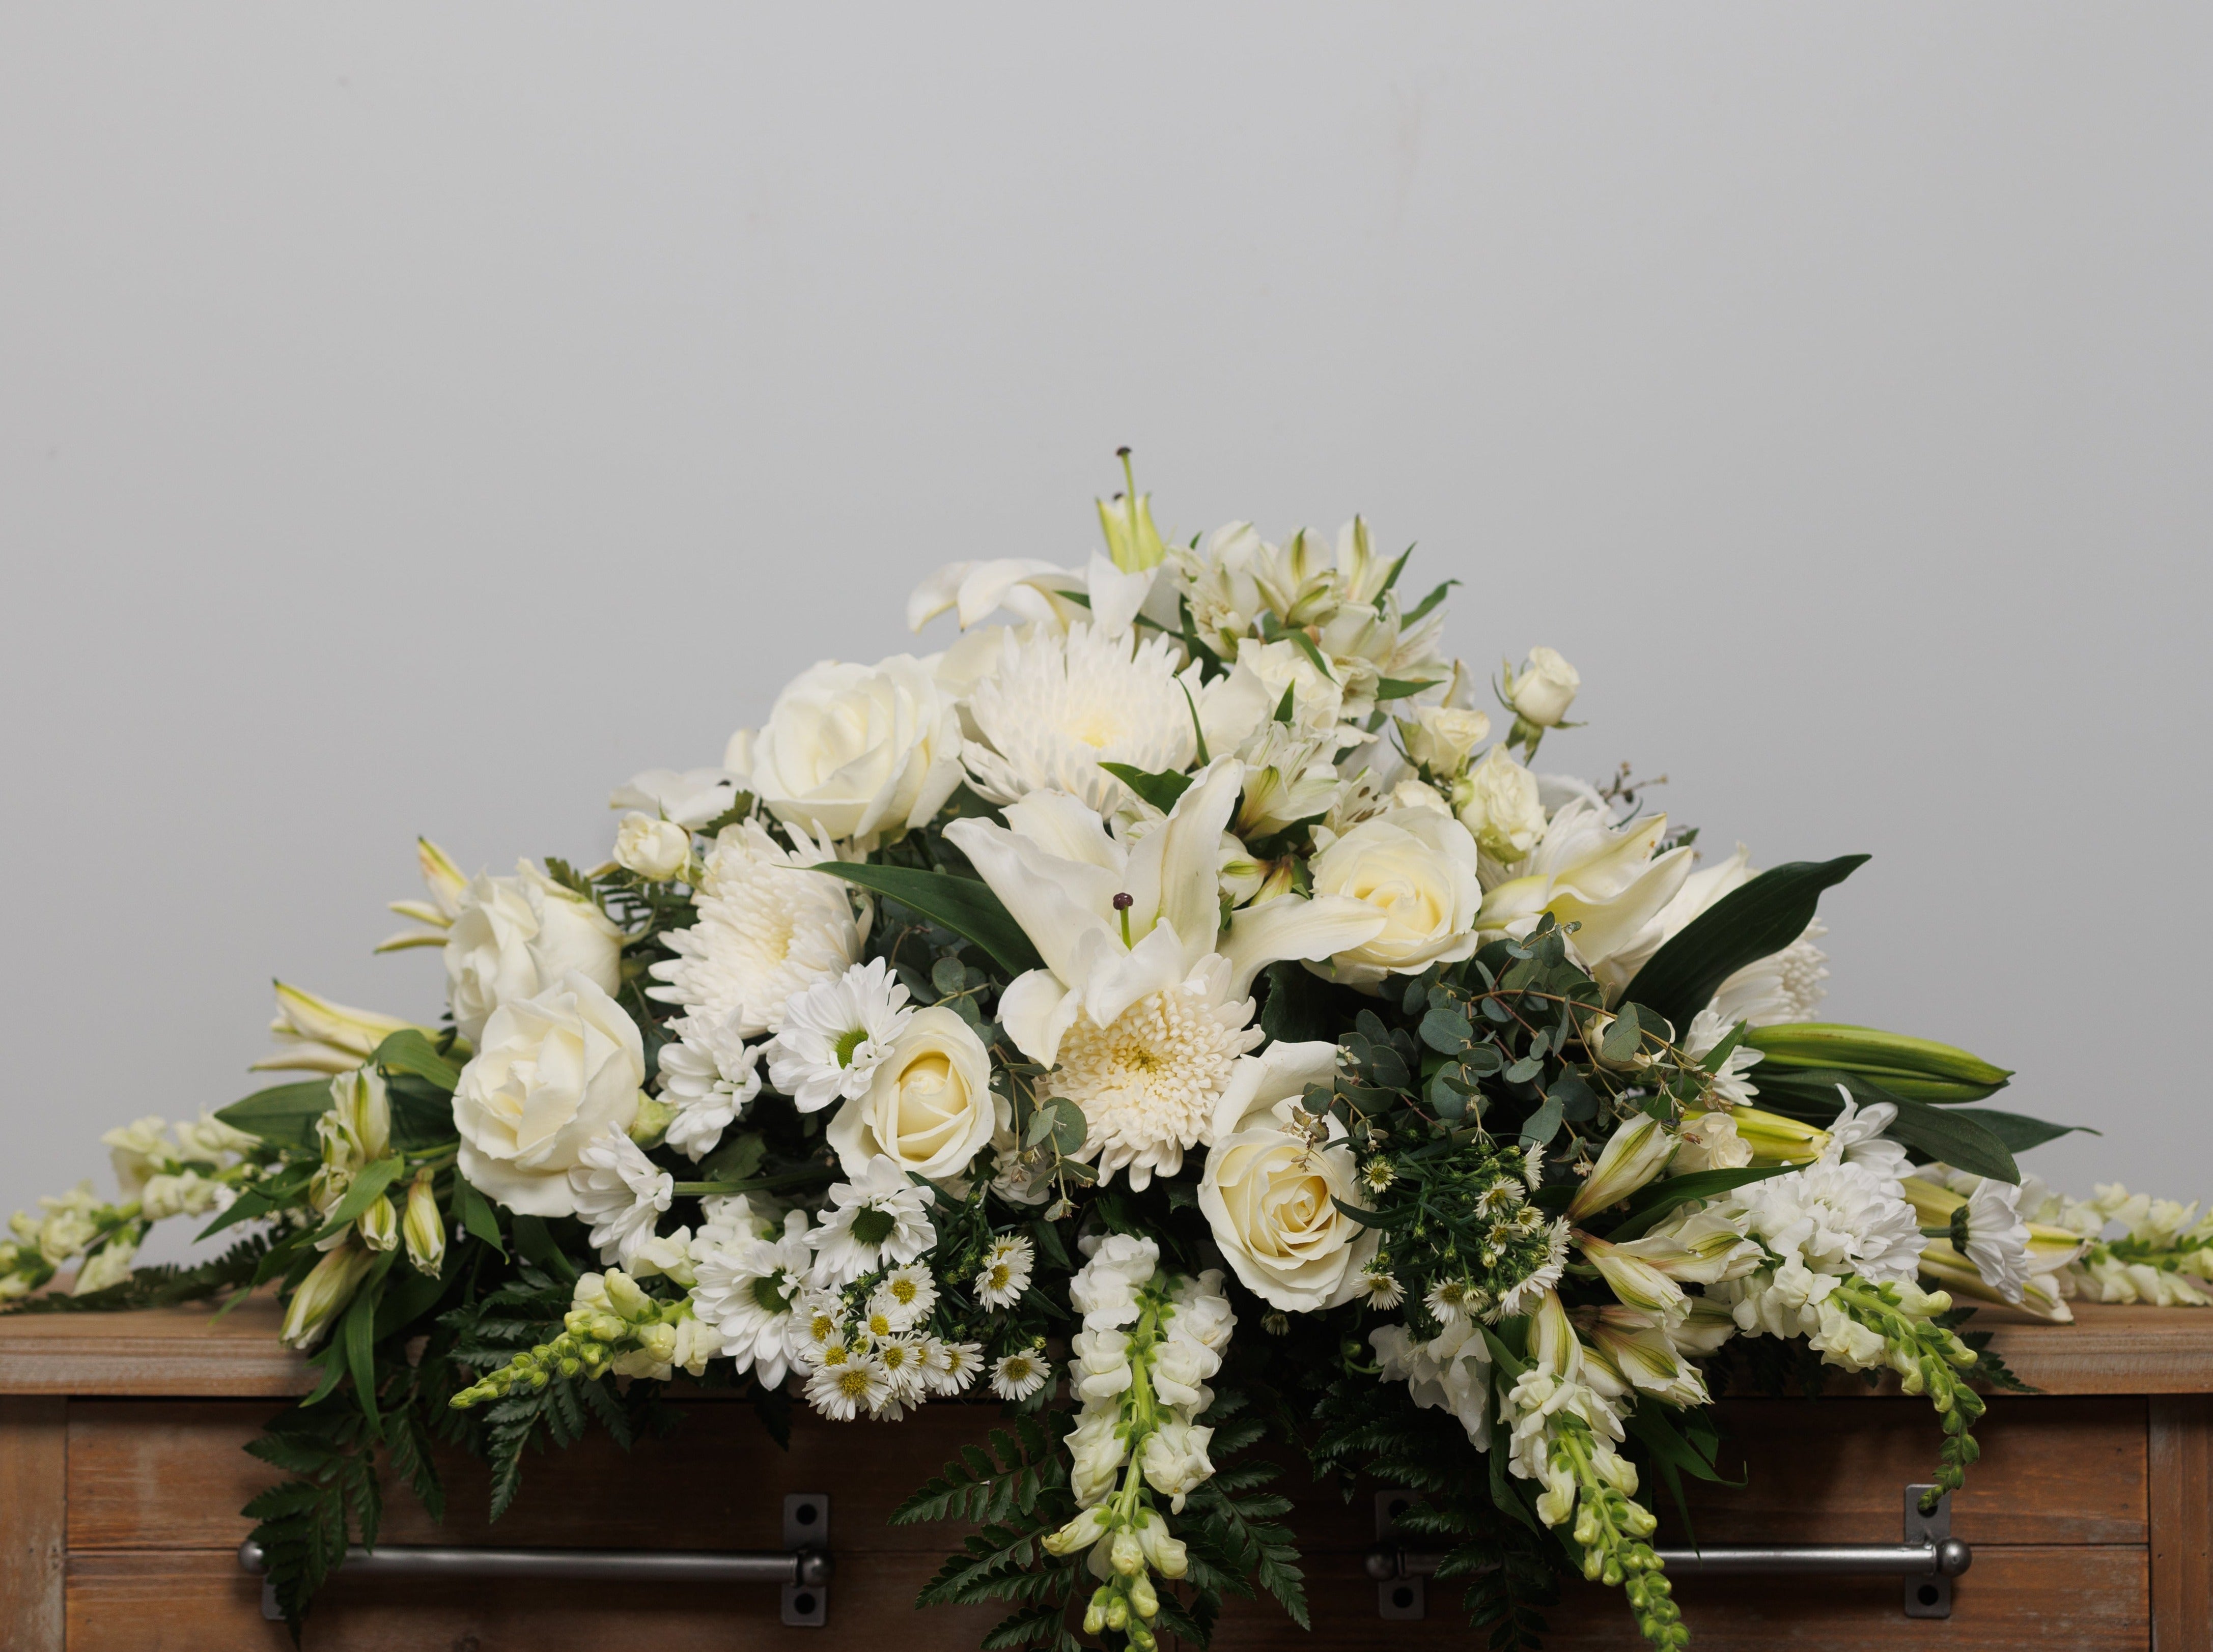 An all white casket pall.